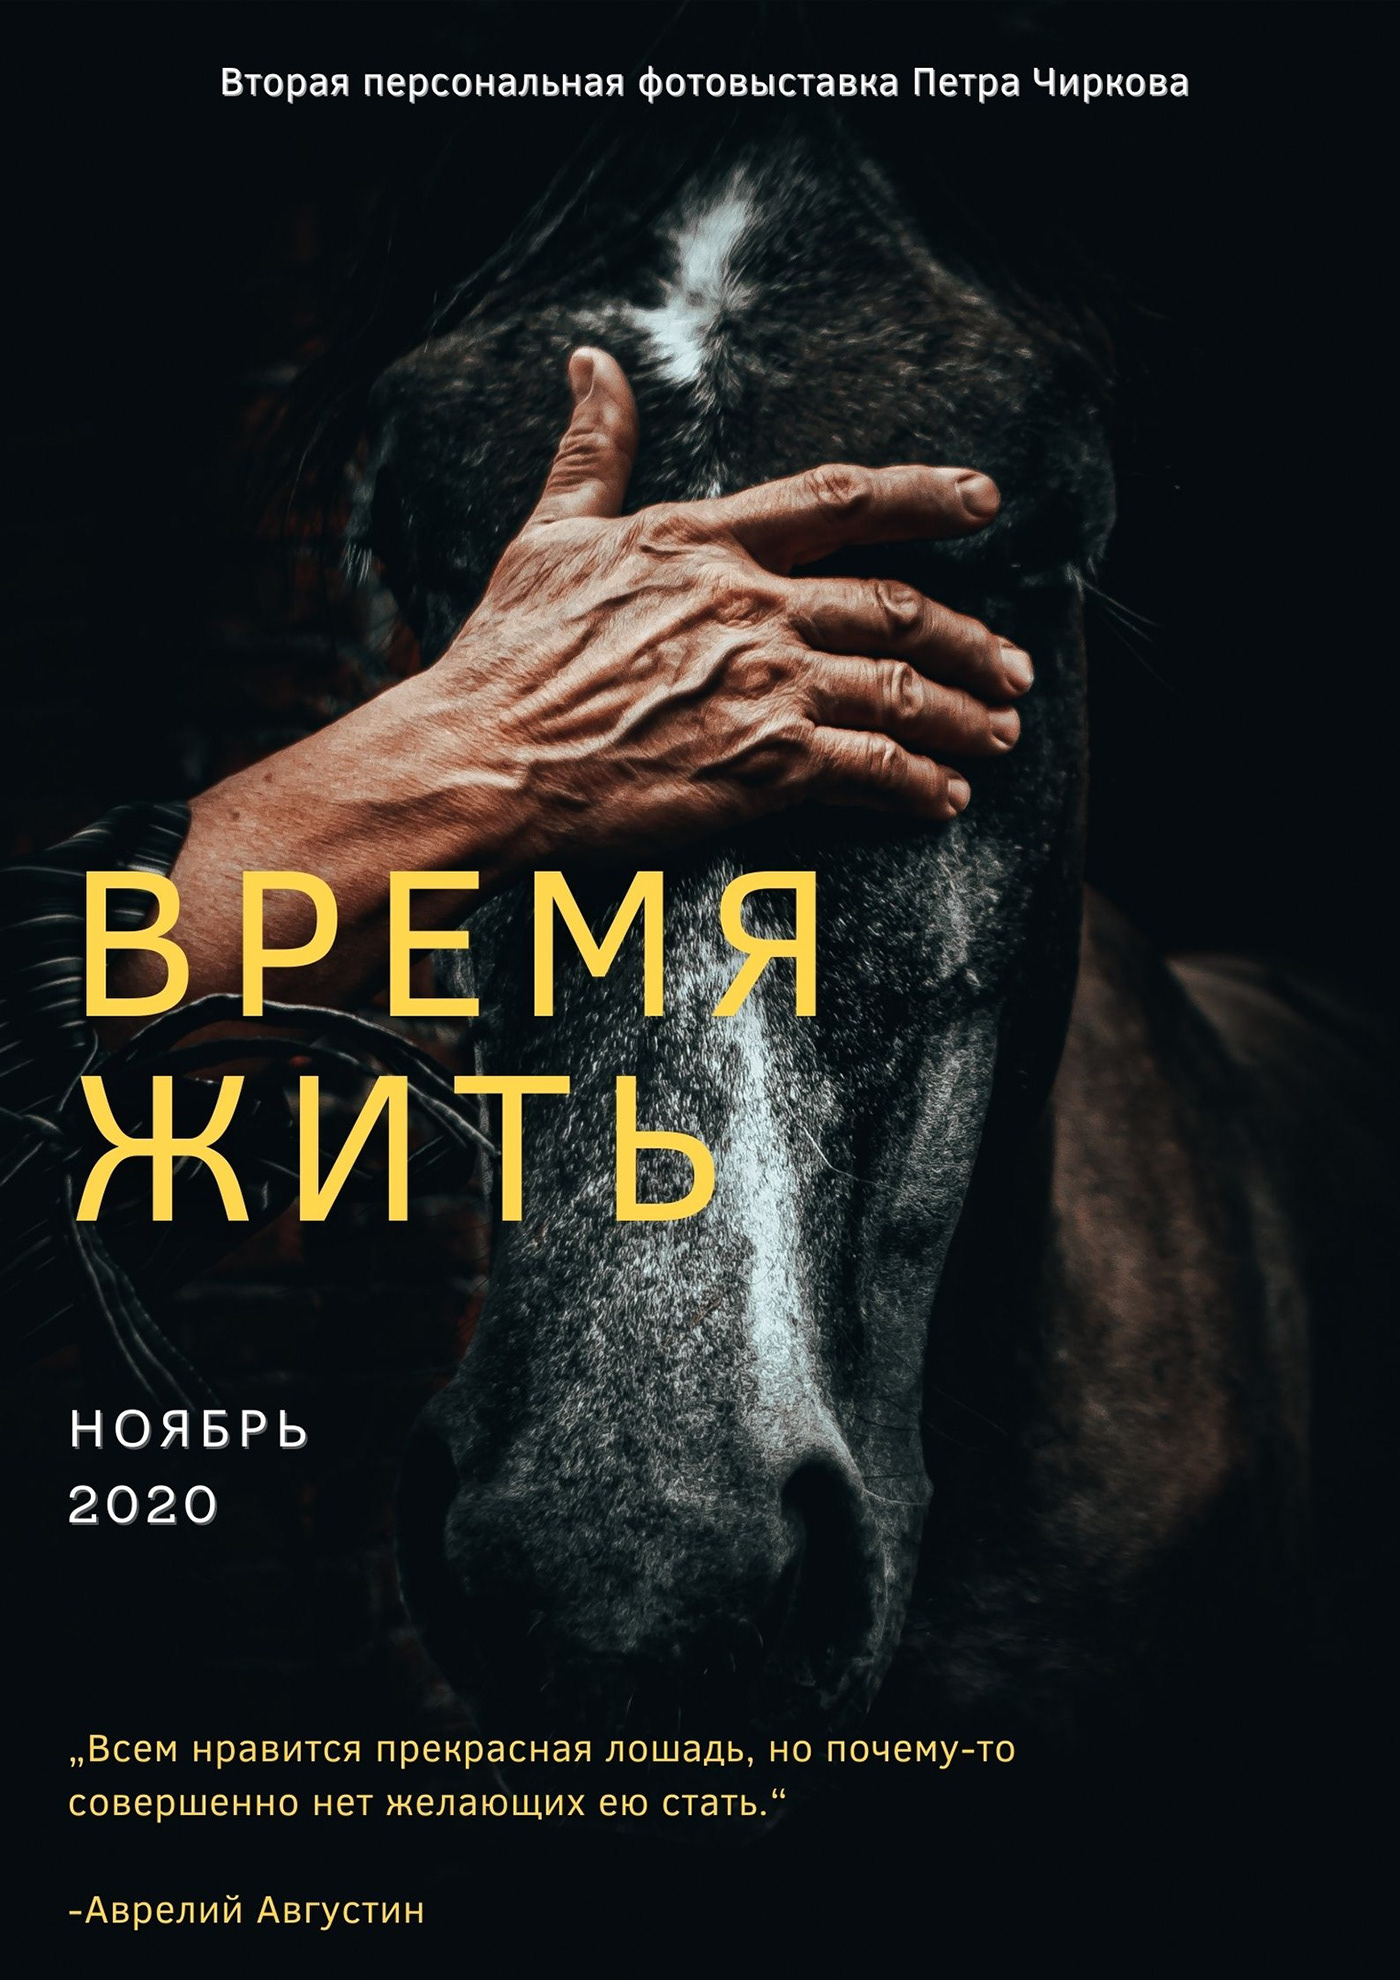 animal help horse horses mrkifa photo photo exhibition photographer